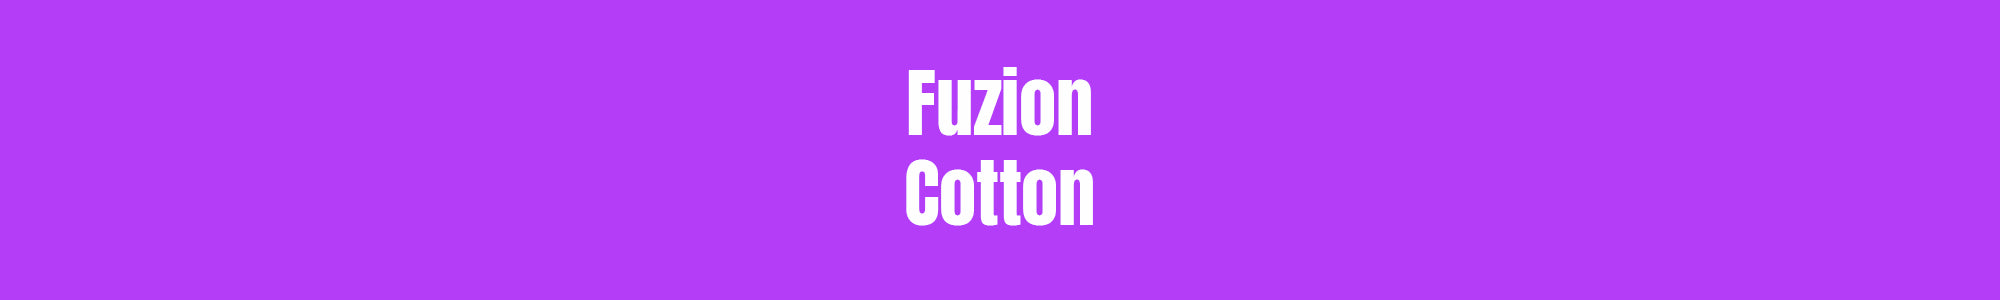 100% natural cotton fuzion cotton